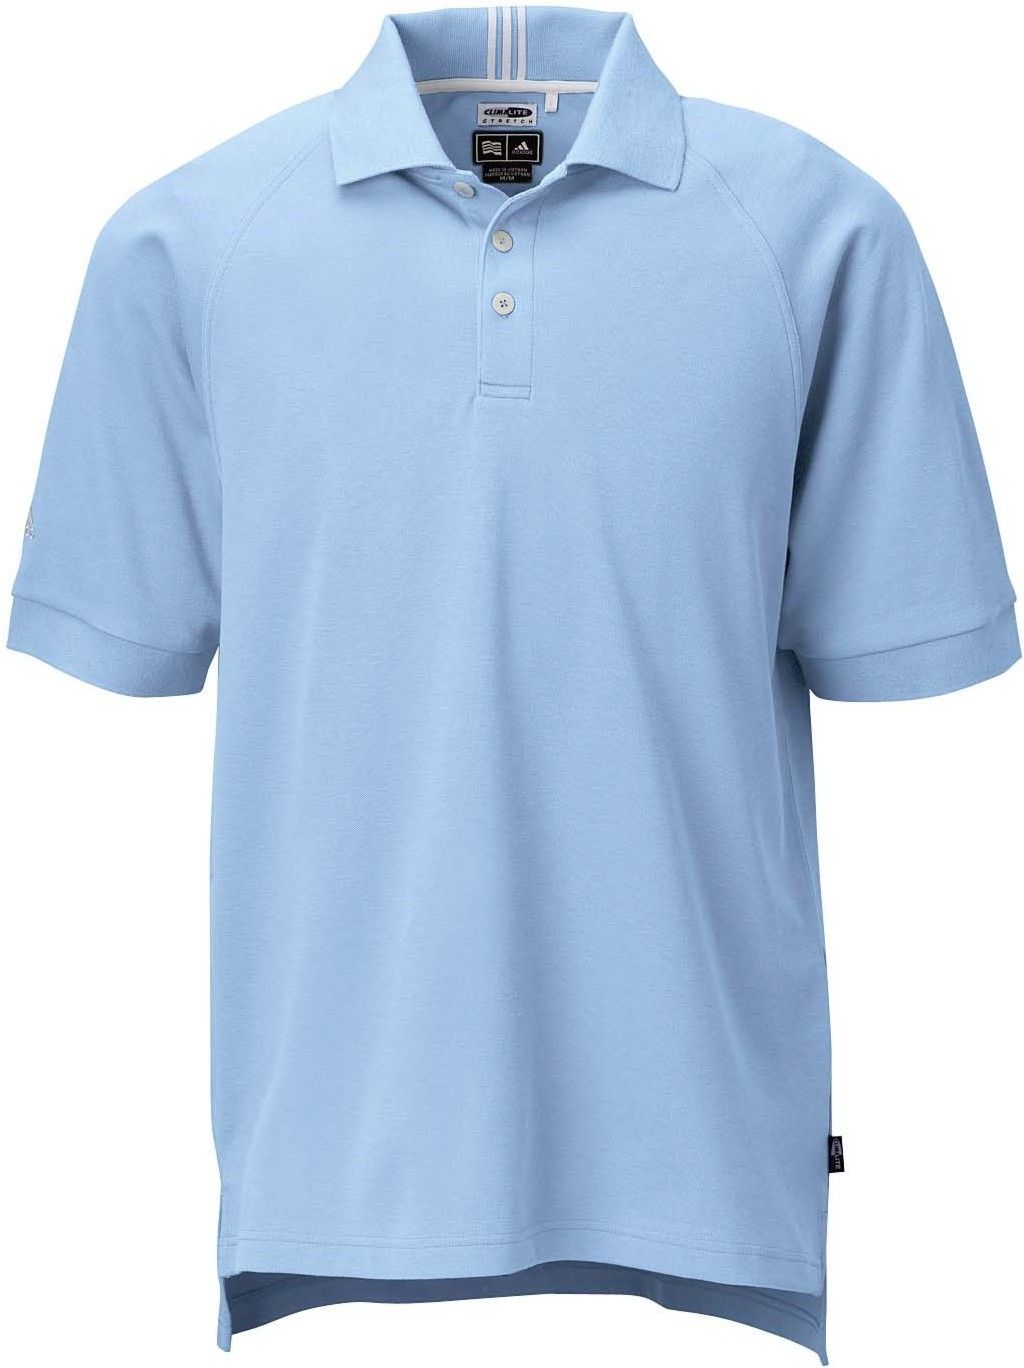 Adidas Golf ClimaLite Stretch Pique Polo Shirt A08